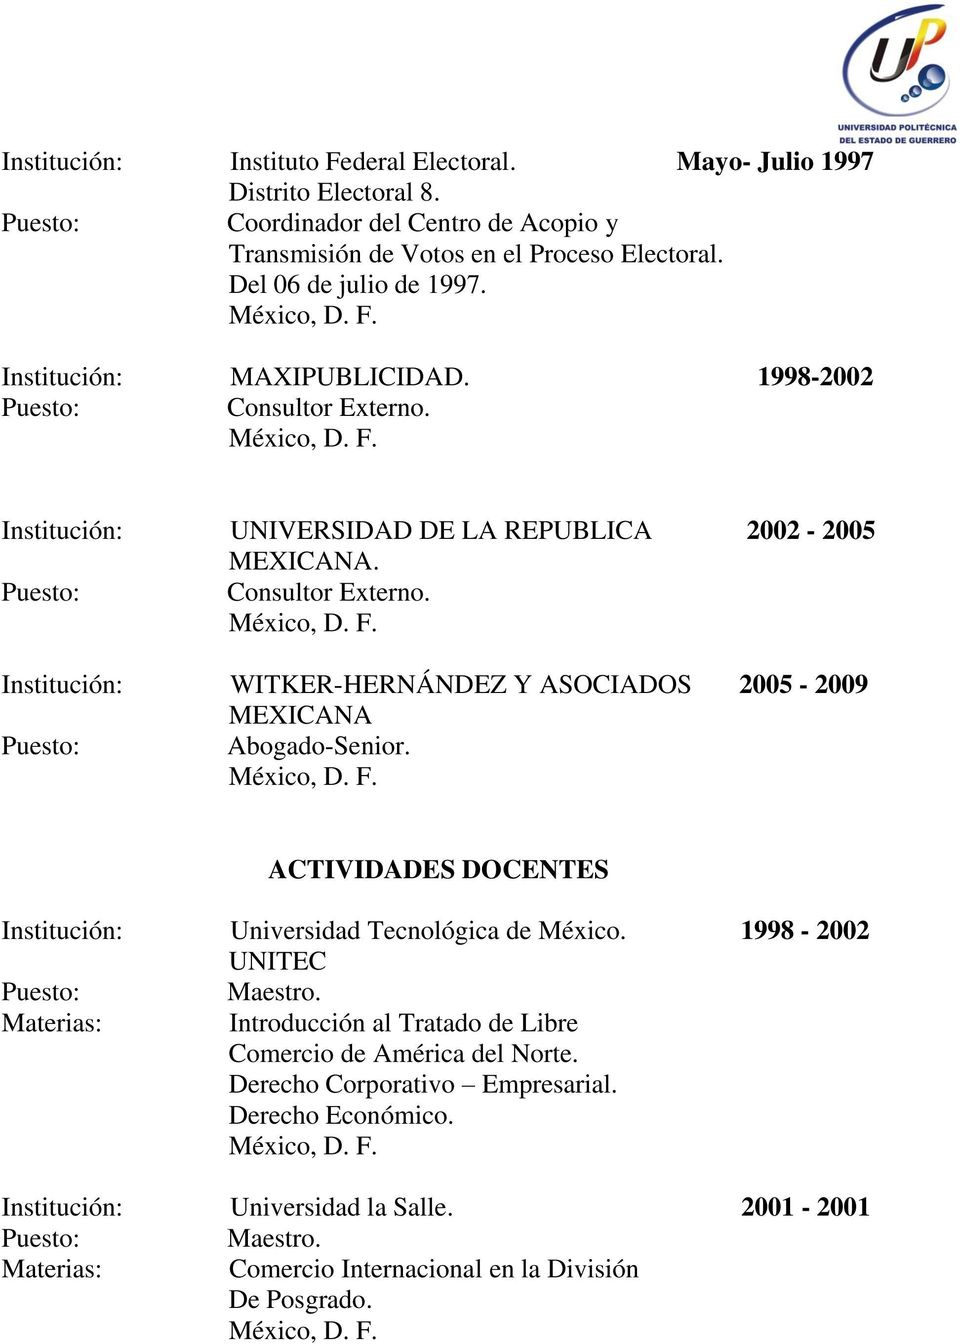 ACTIVIDADES DOCENTES Institución: Universidad Tecnológica de México. 1998-2002 UNITEC Materias: Introducción al Tratado de Libre Comercio de América del Norte.